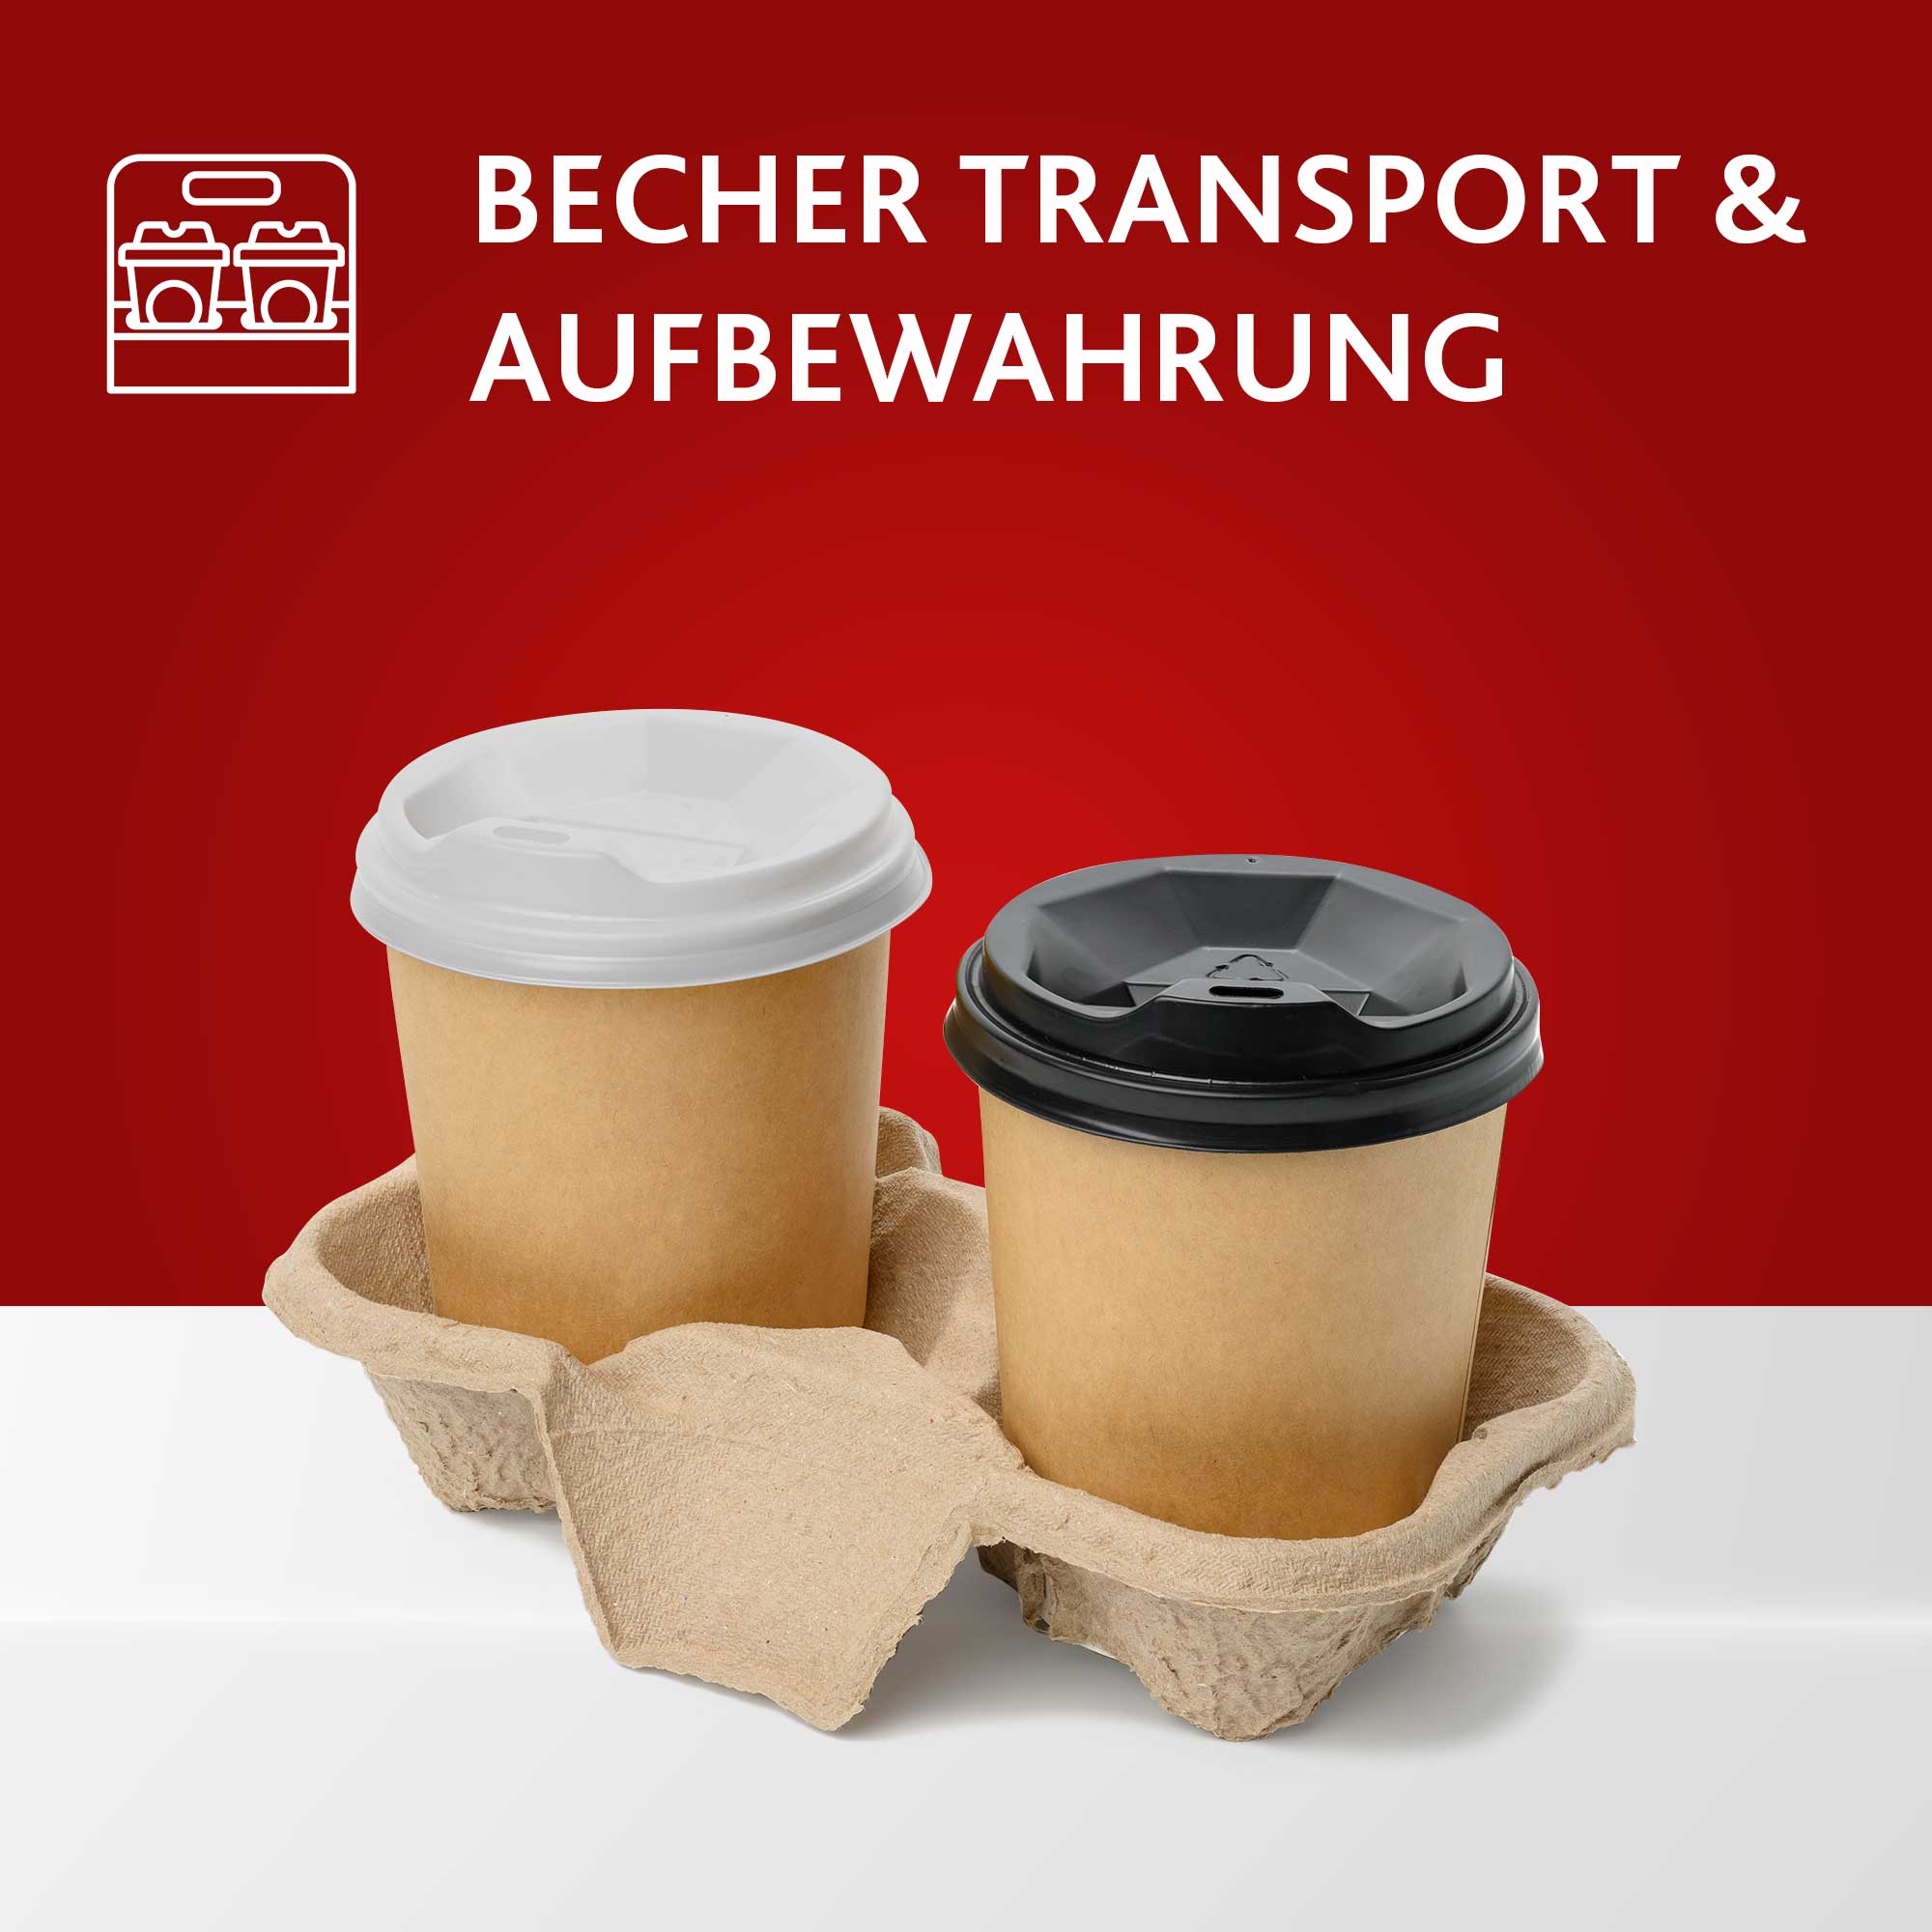 https://www.becher-onlineshop.de/images/categories/SWS_Schueler_Becher_Aufbewahrung_Transport.jpg